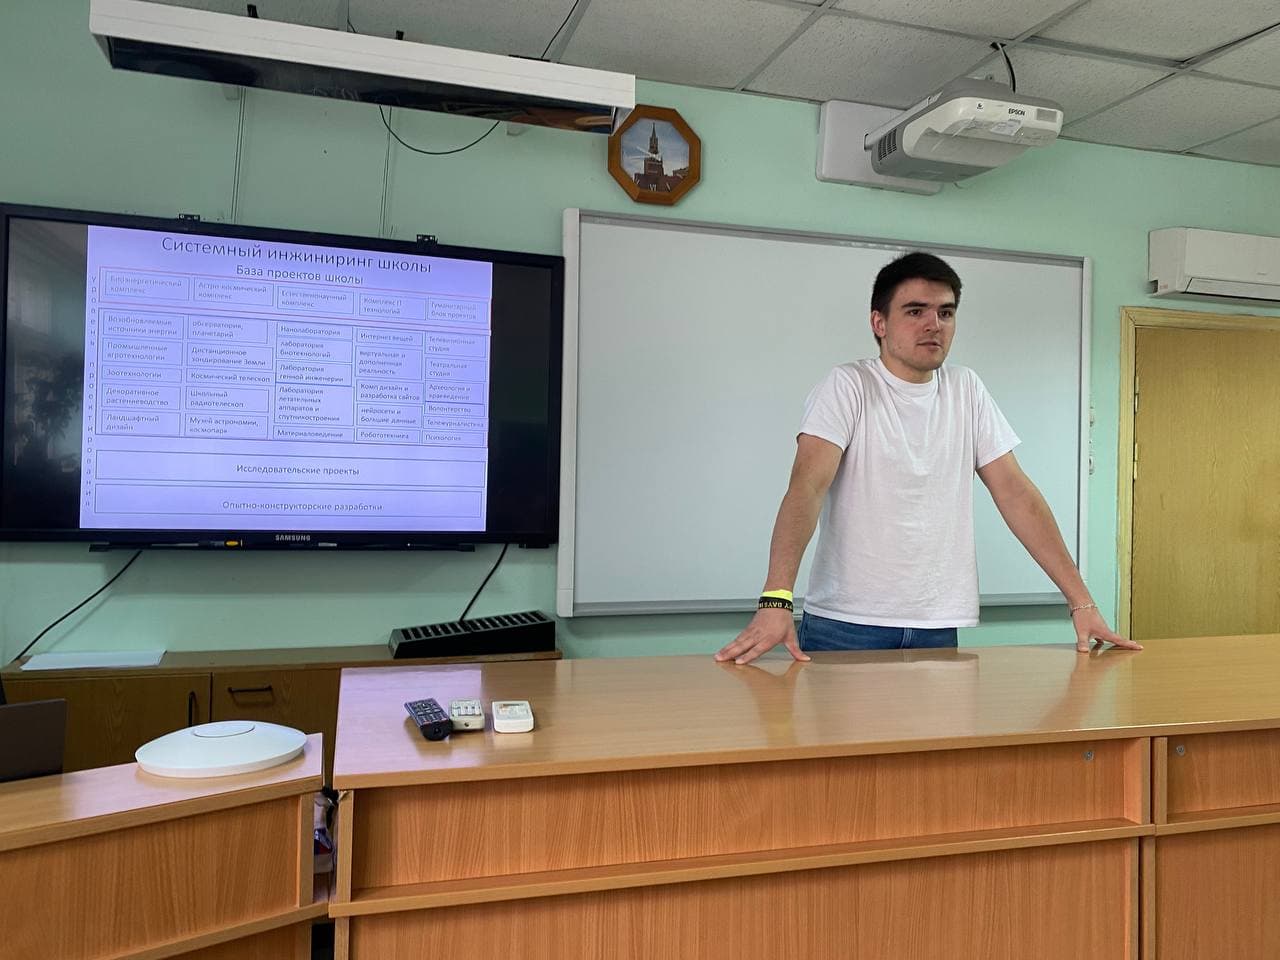 Киселёв Андрей выступает с рассказом о школьной телестудии.